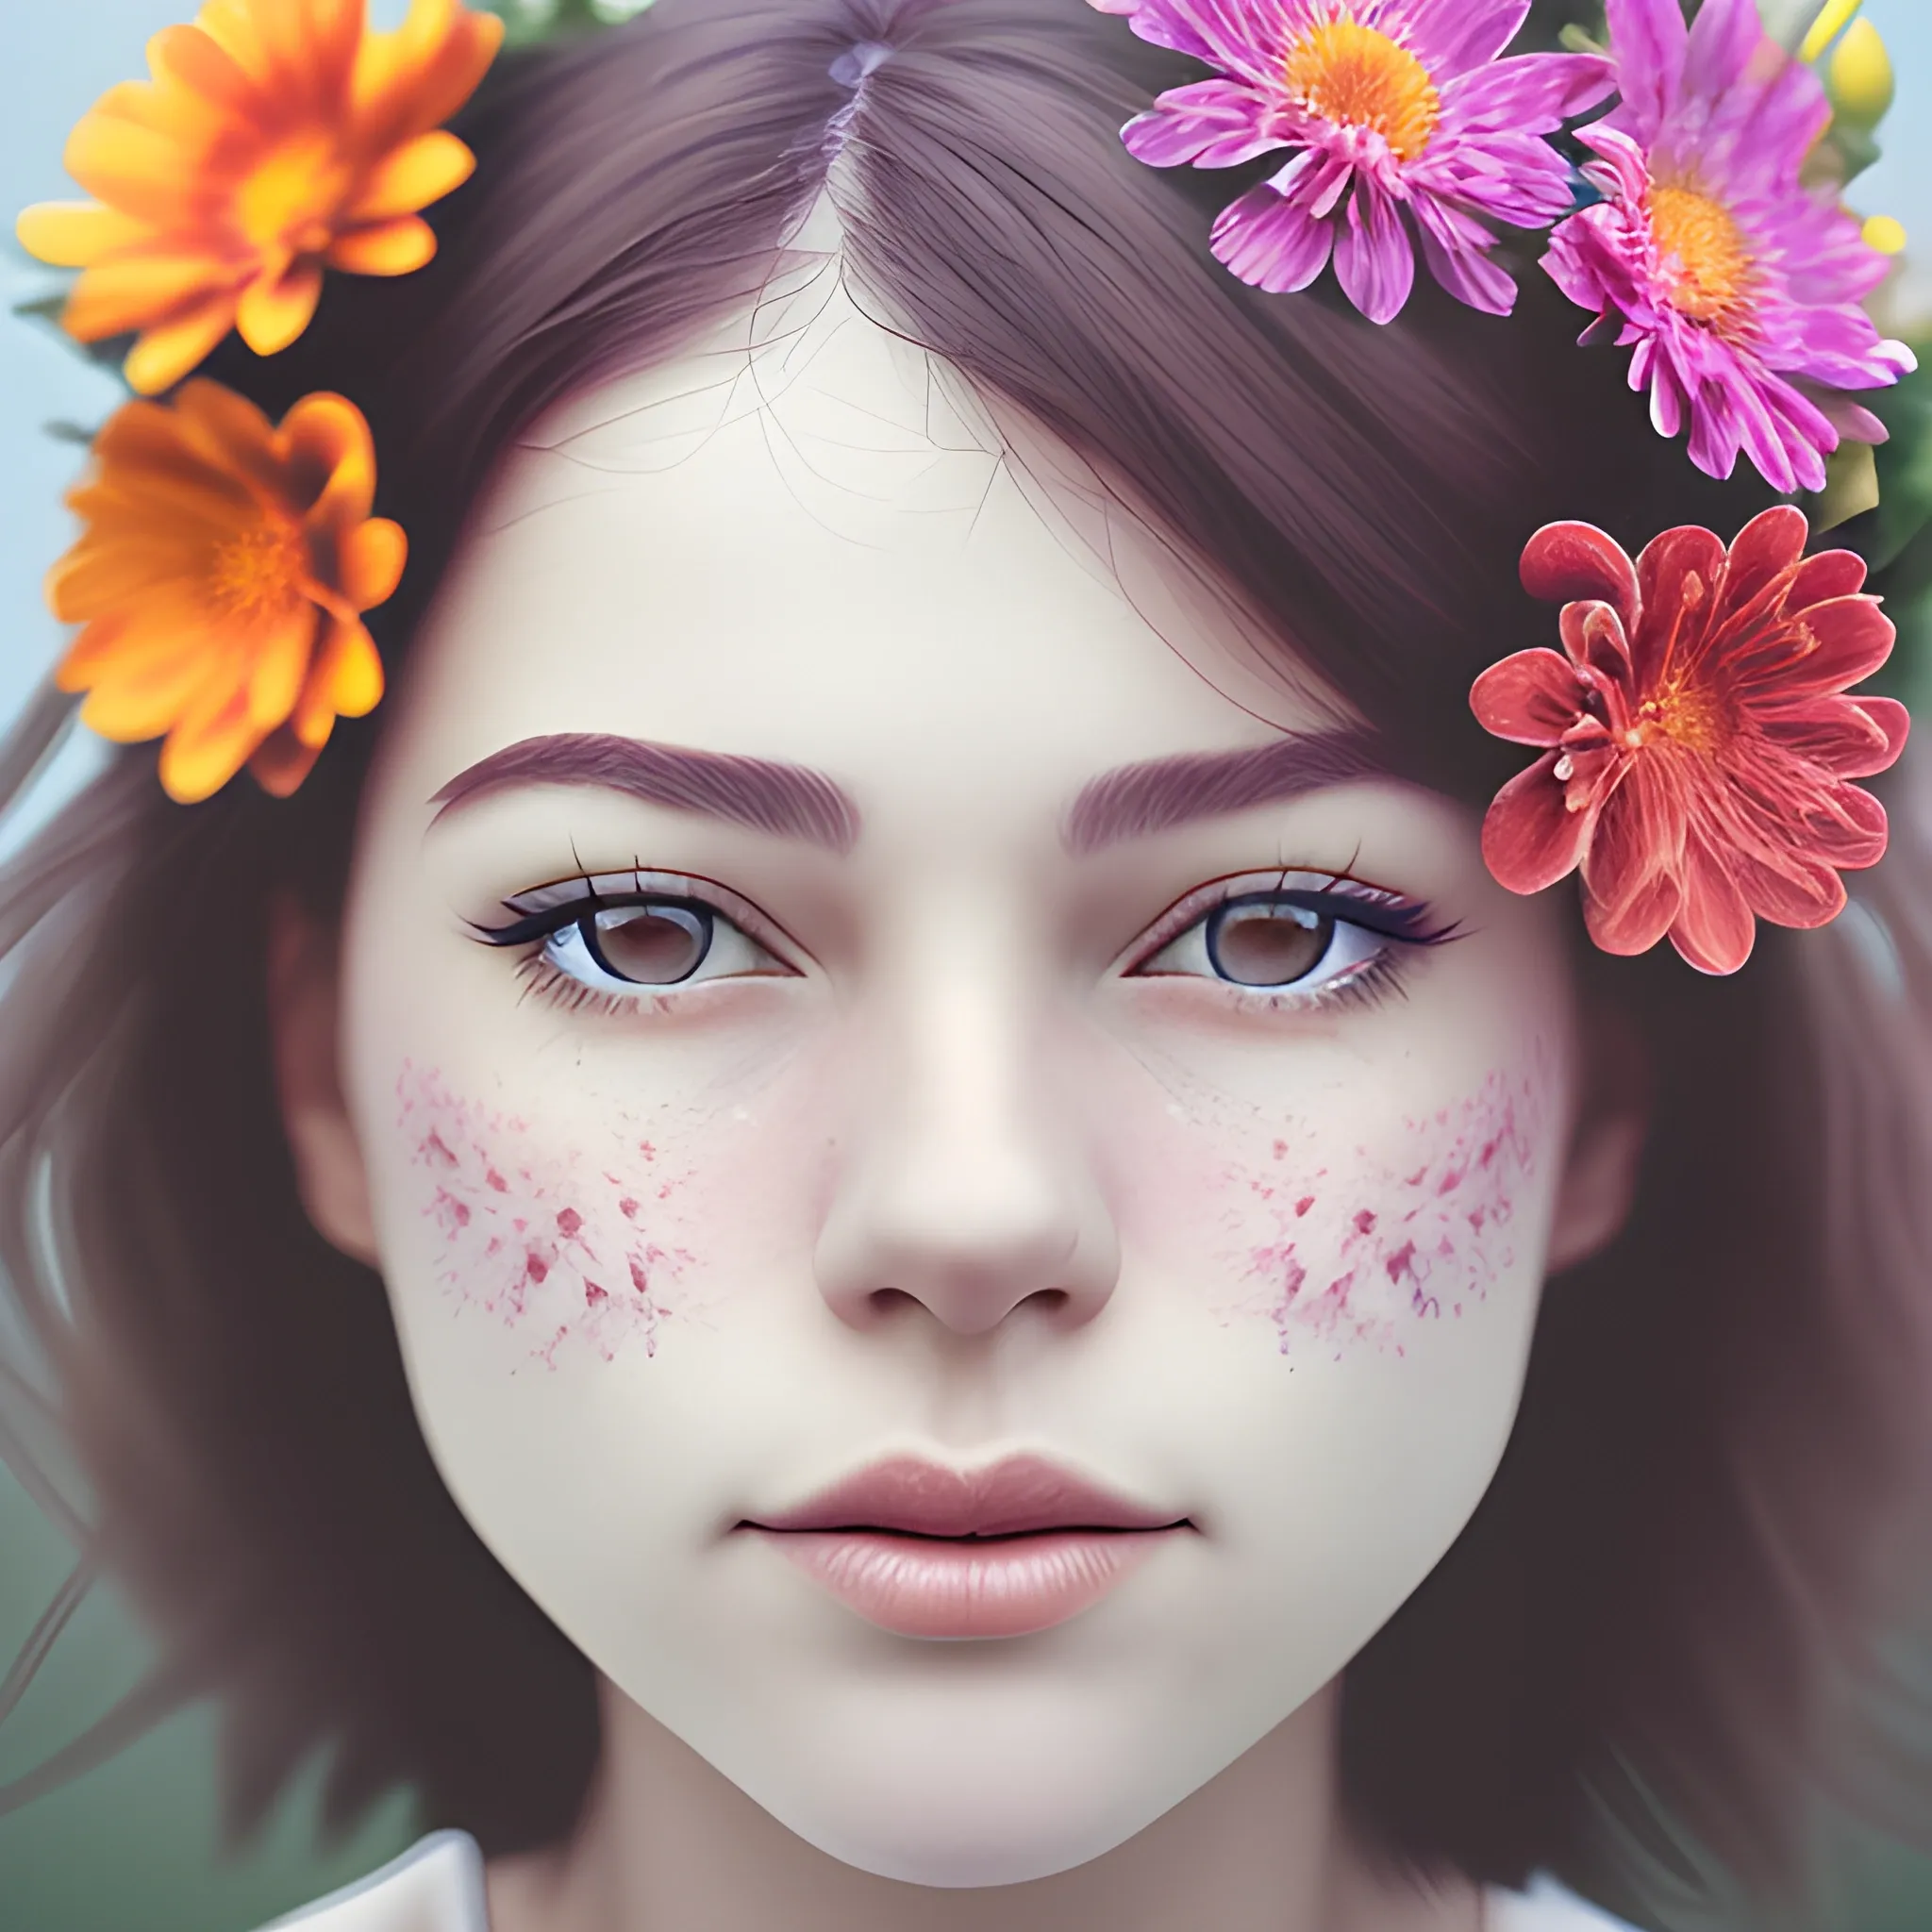 female portrait face, close up, foggy background,vibrant flower decoration